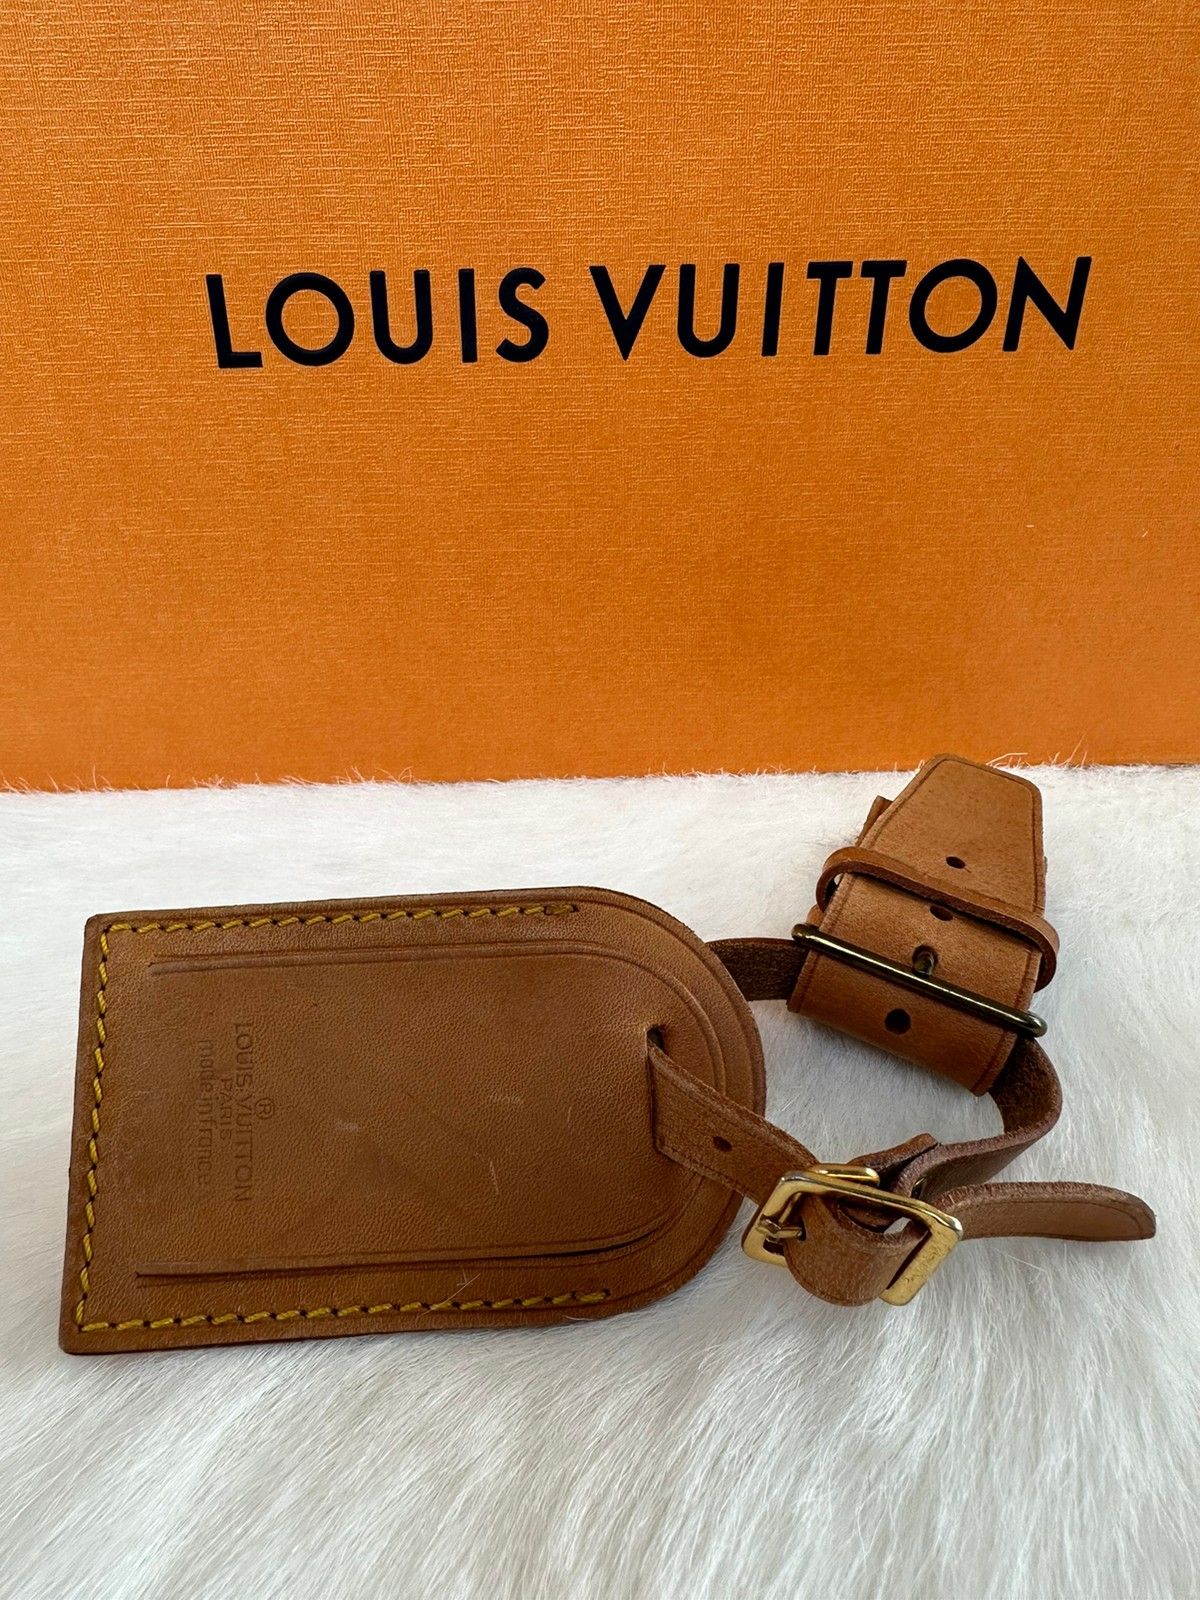 Vintage LOUIS VUITTON Luggage Tag